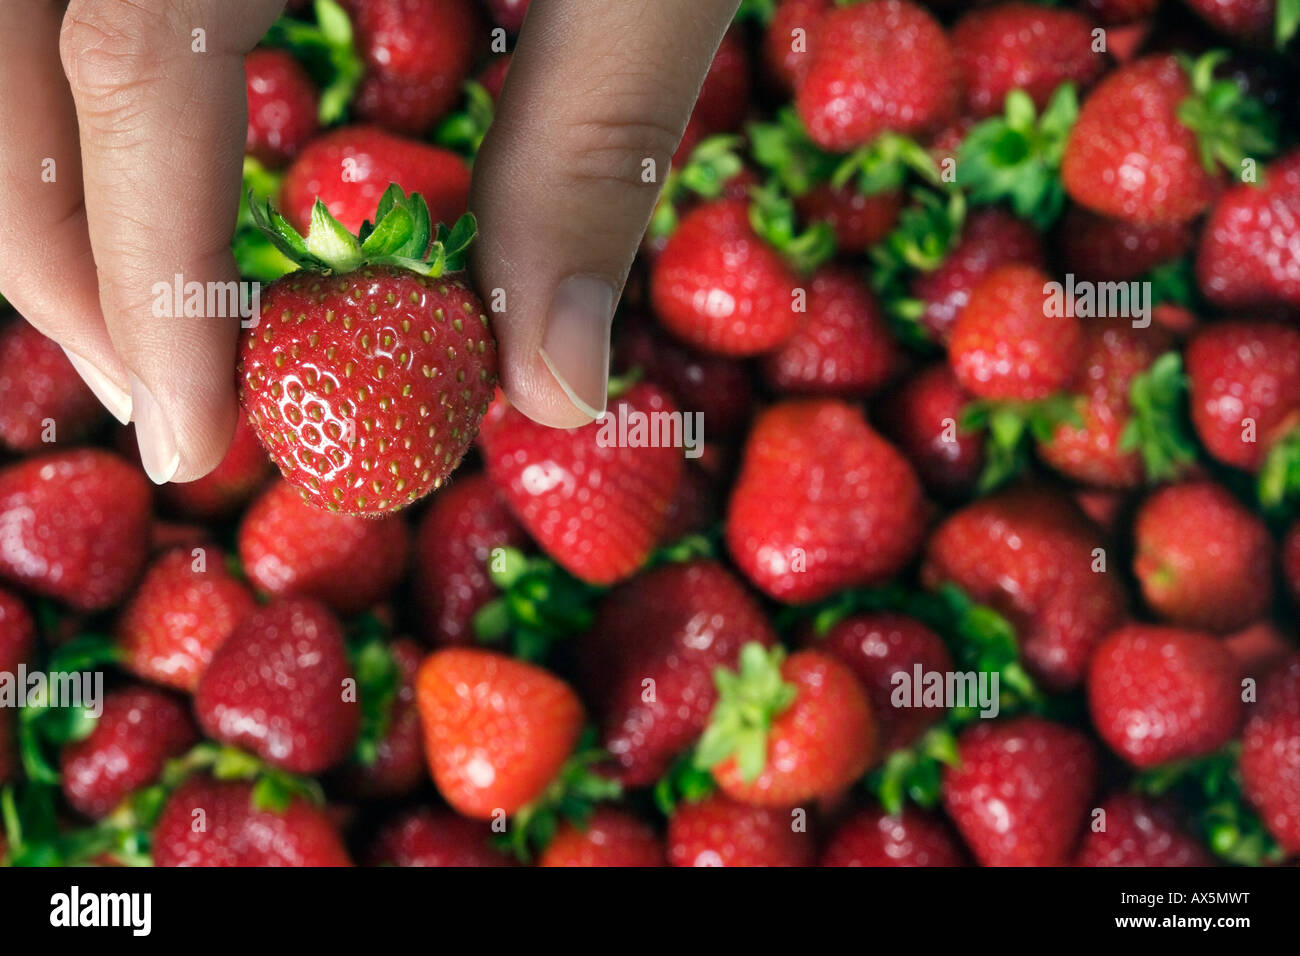 Strawberries (Fragaria) Stock Photo